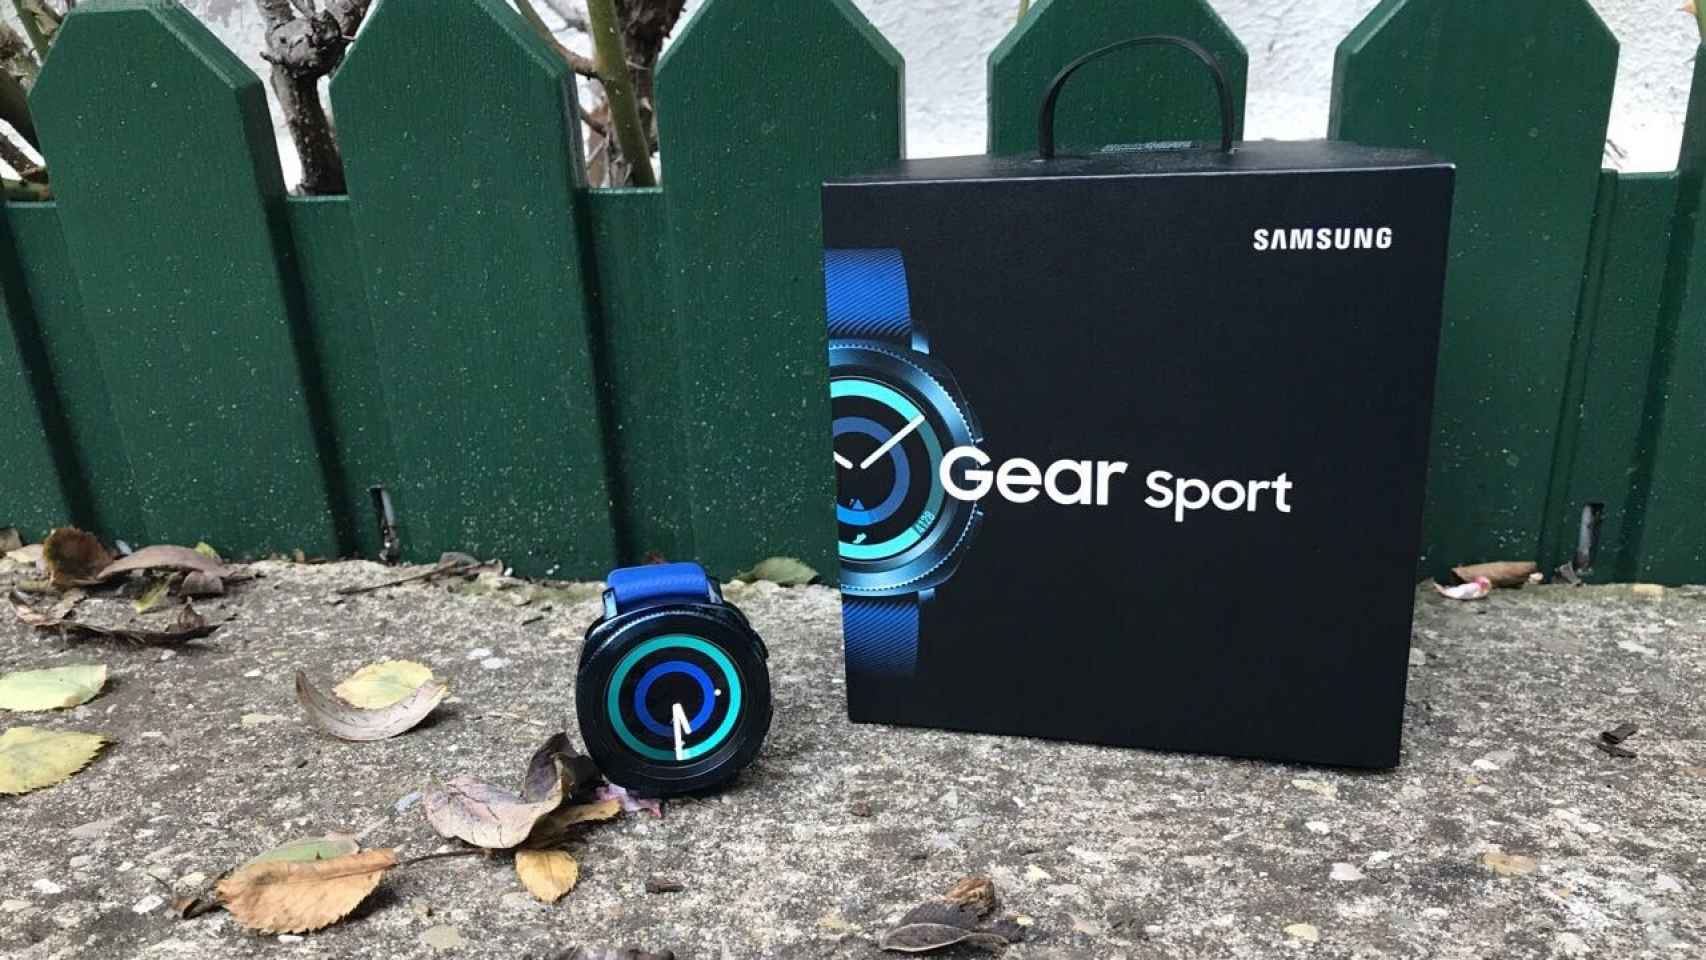 Samsung Gear Sport: Análisis y experiencia de uso